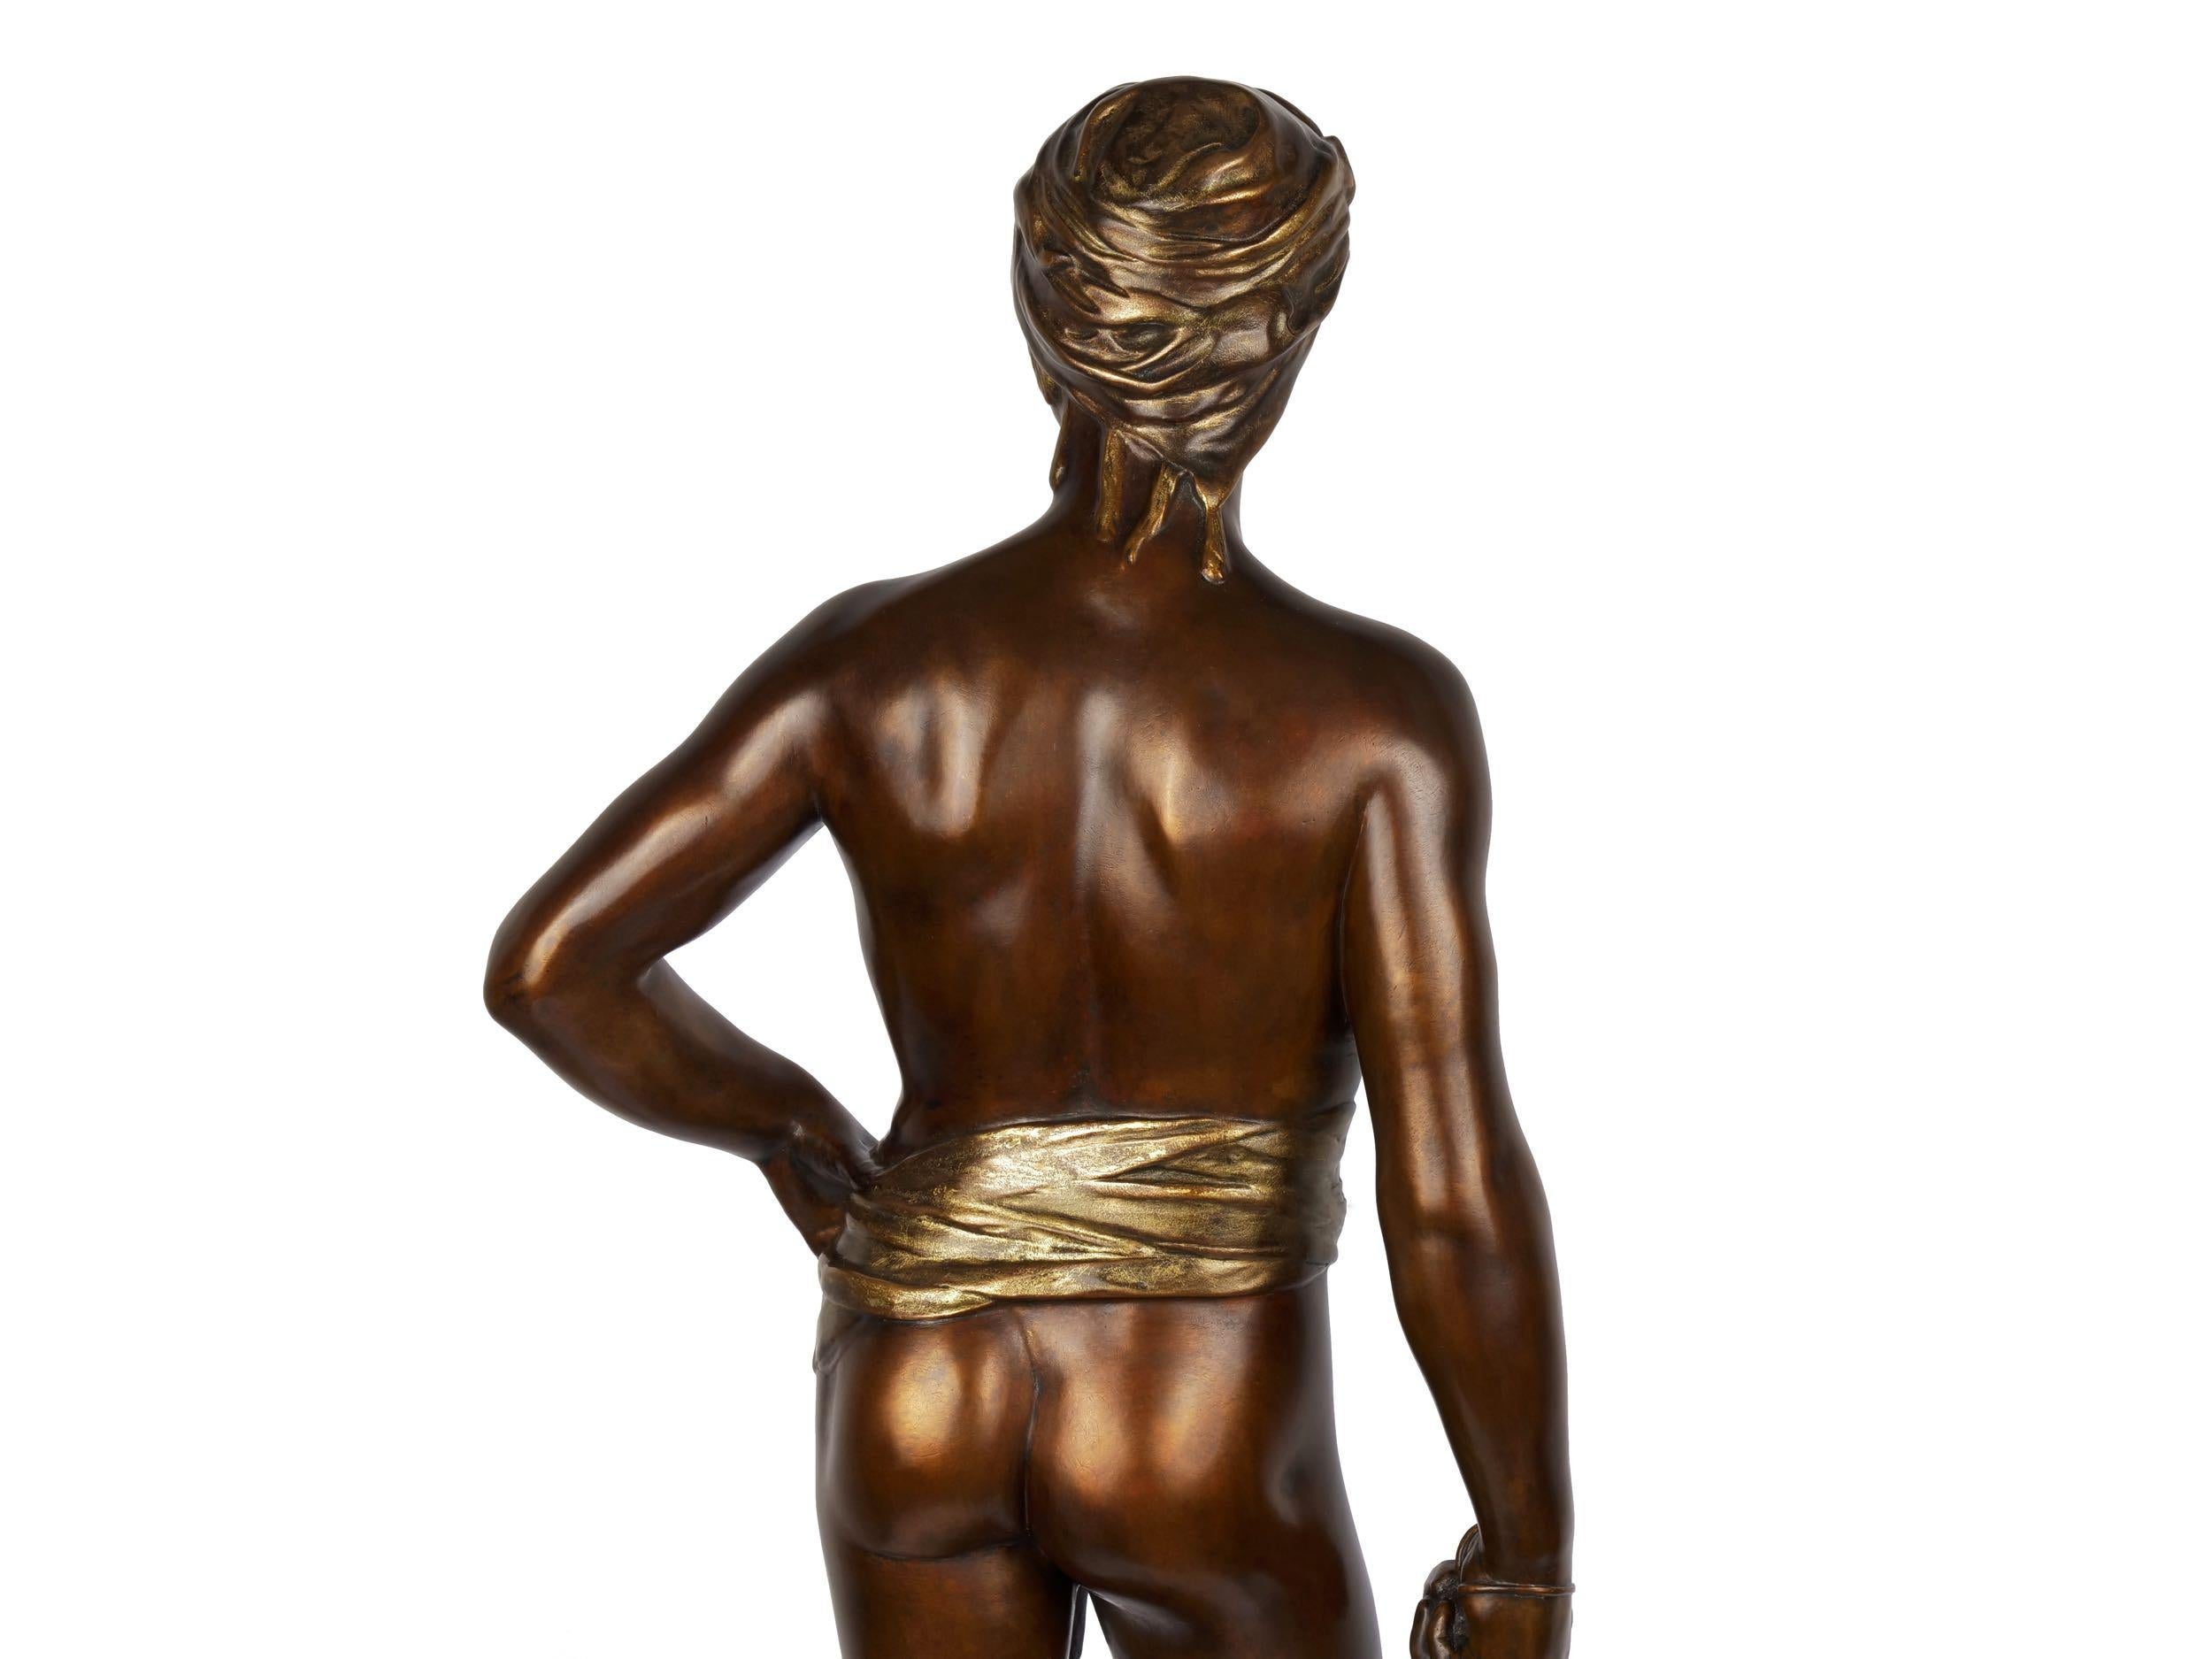 Bronze Sculpture 